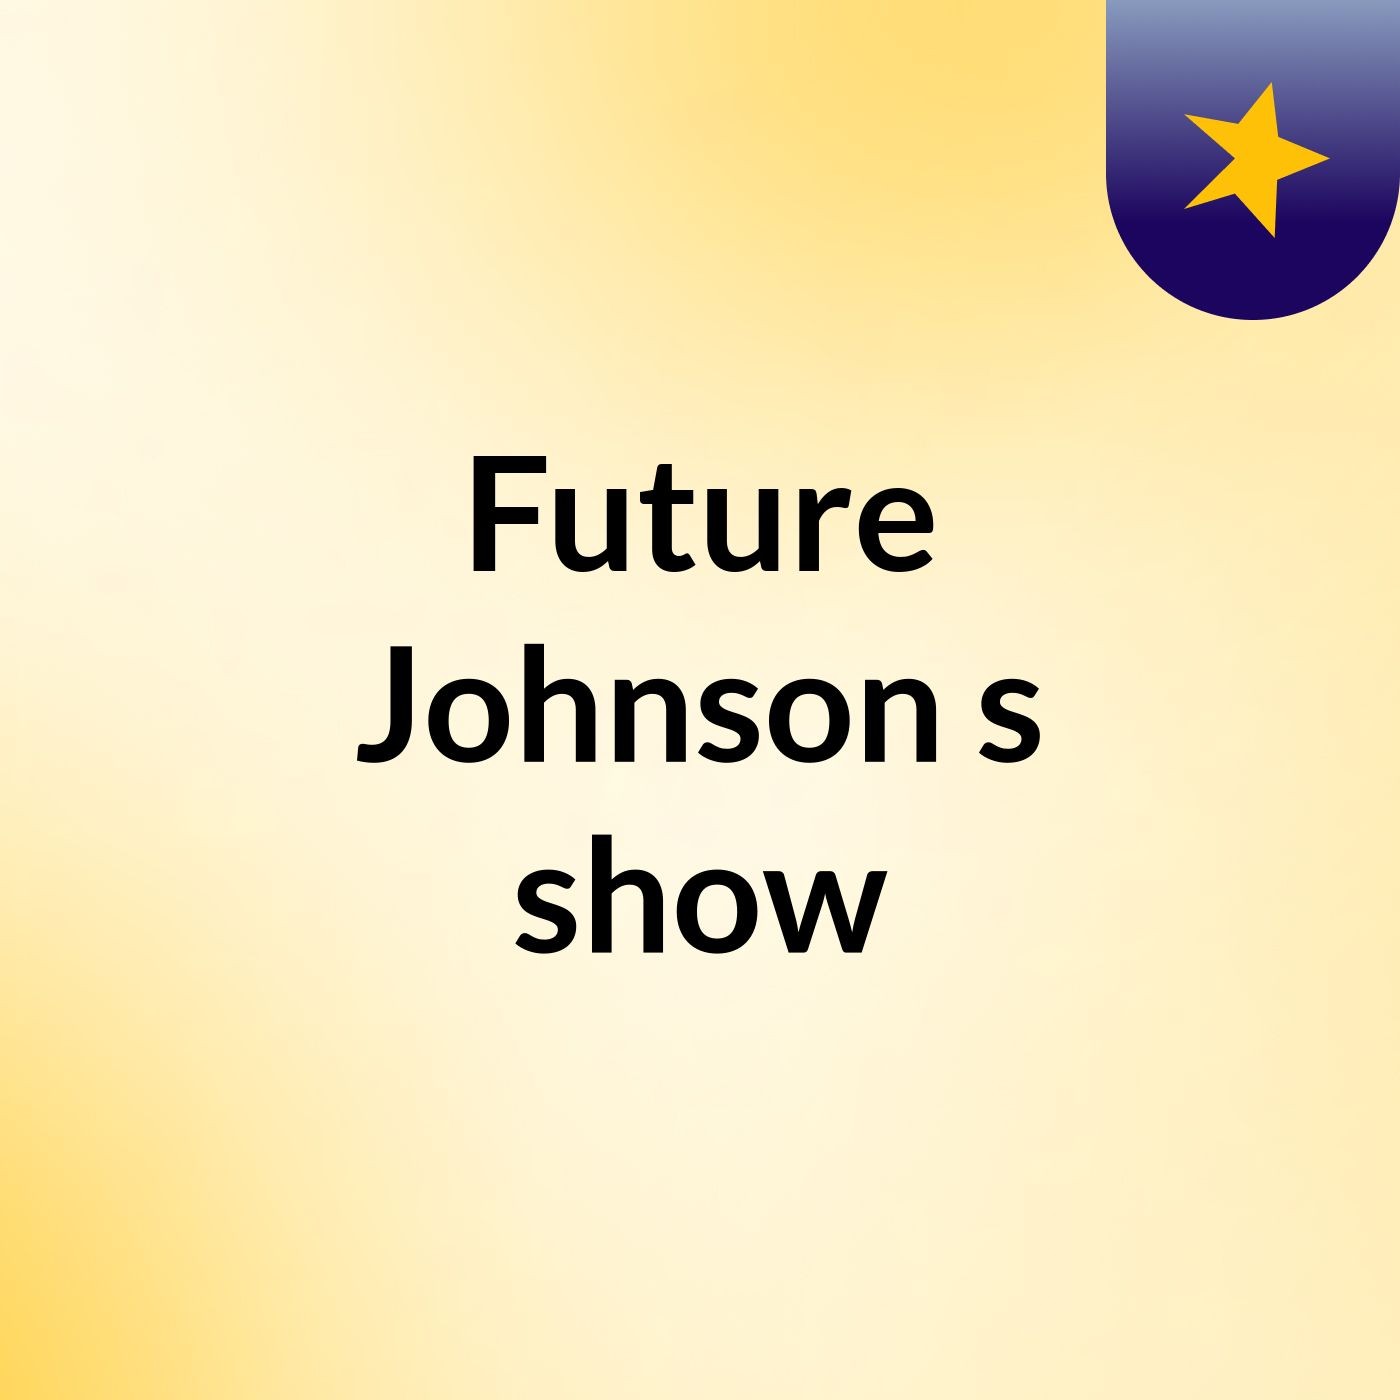 Future Johnson's show